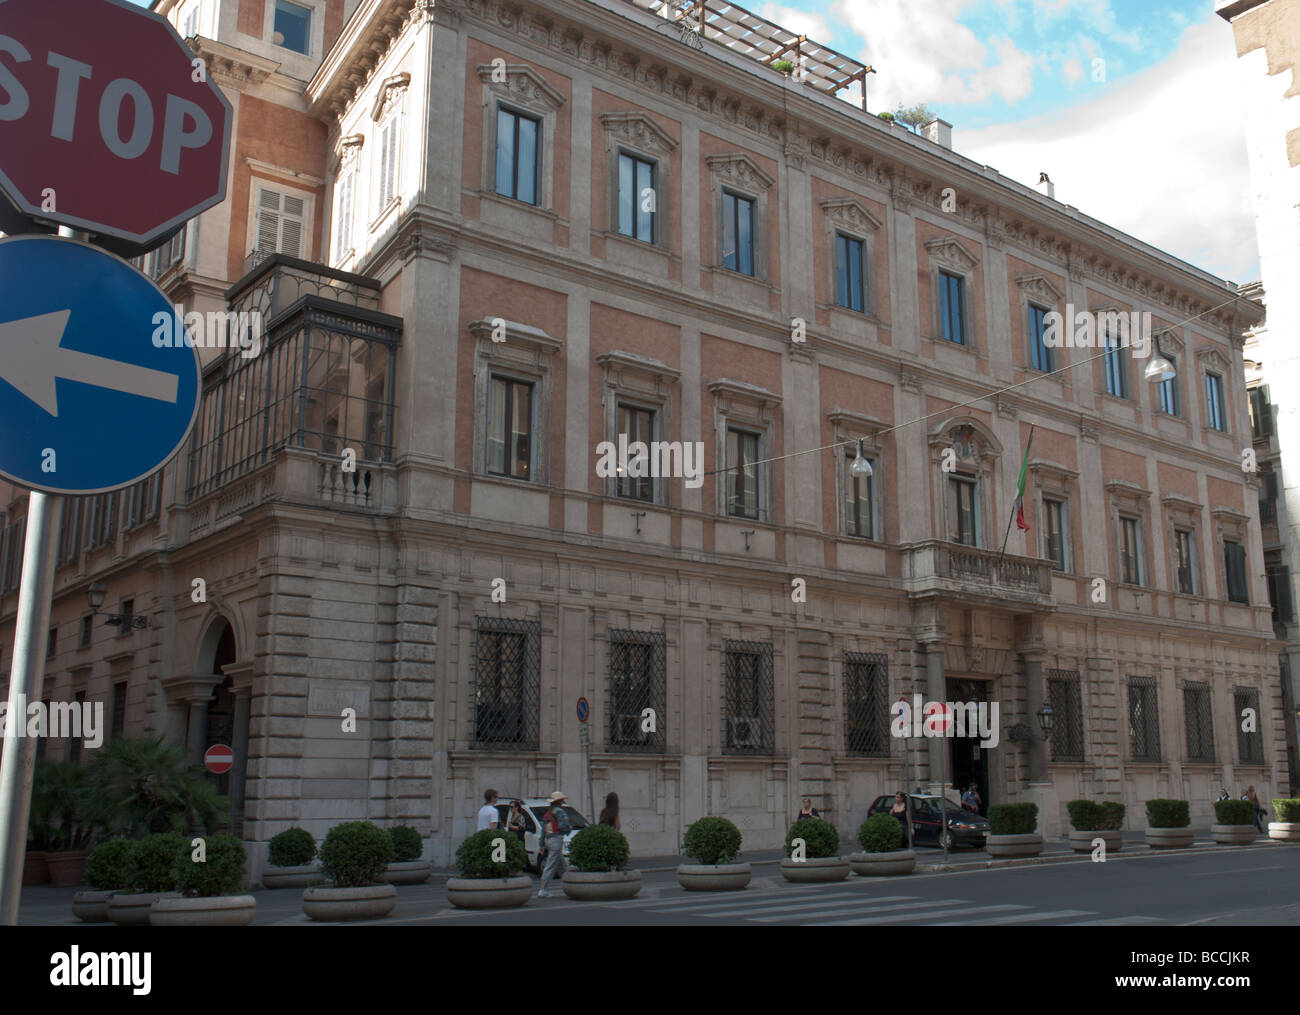 Façade of Palazzo Grazioli in via del Plebiscito, in Rome Stock Photo